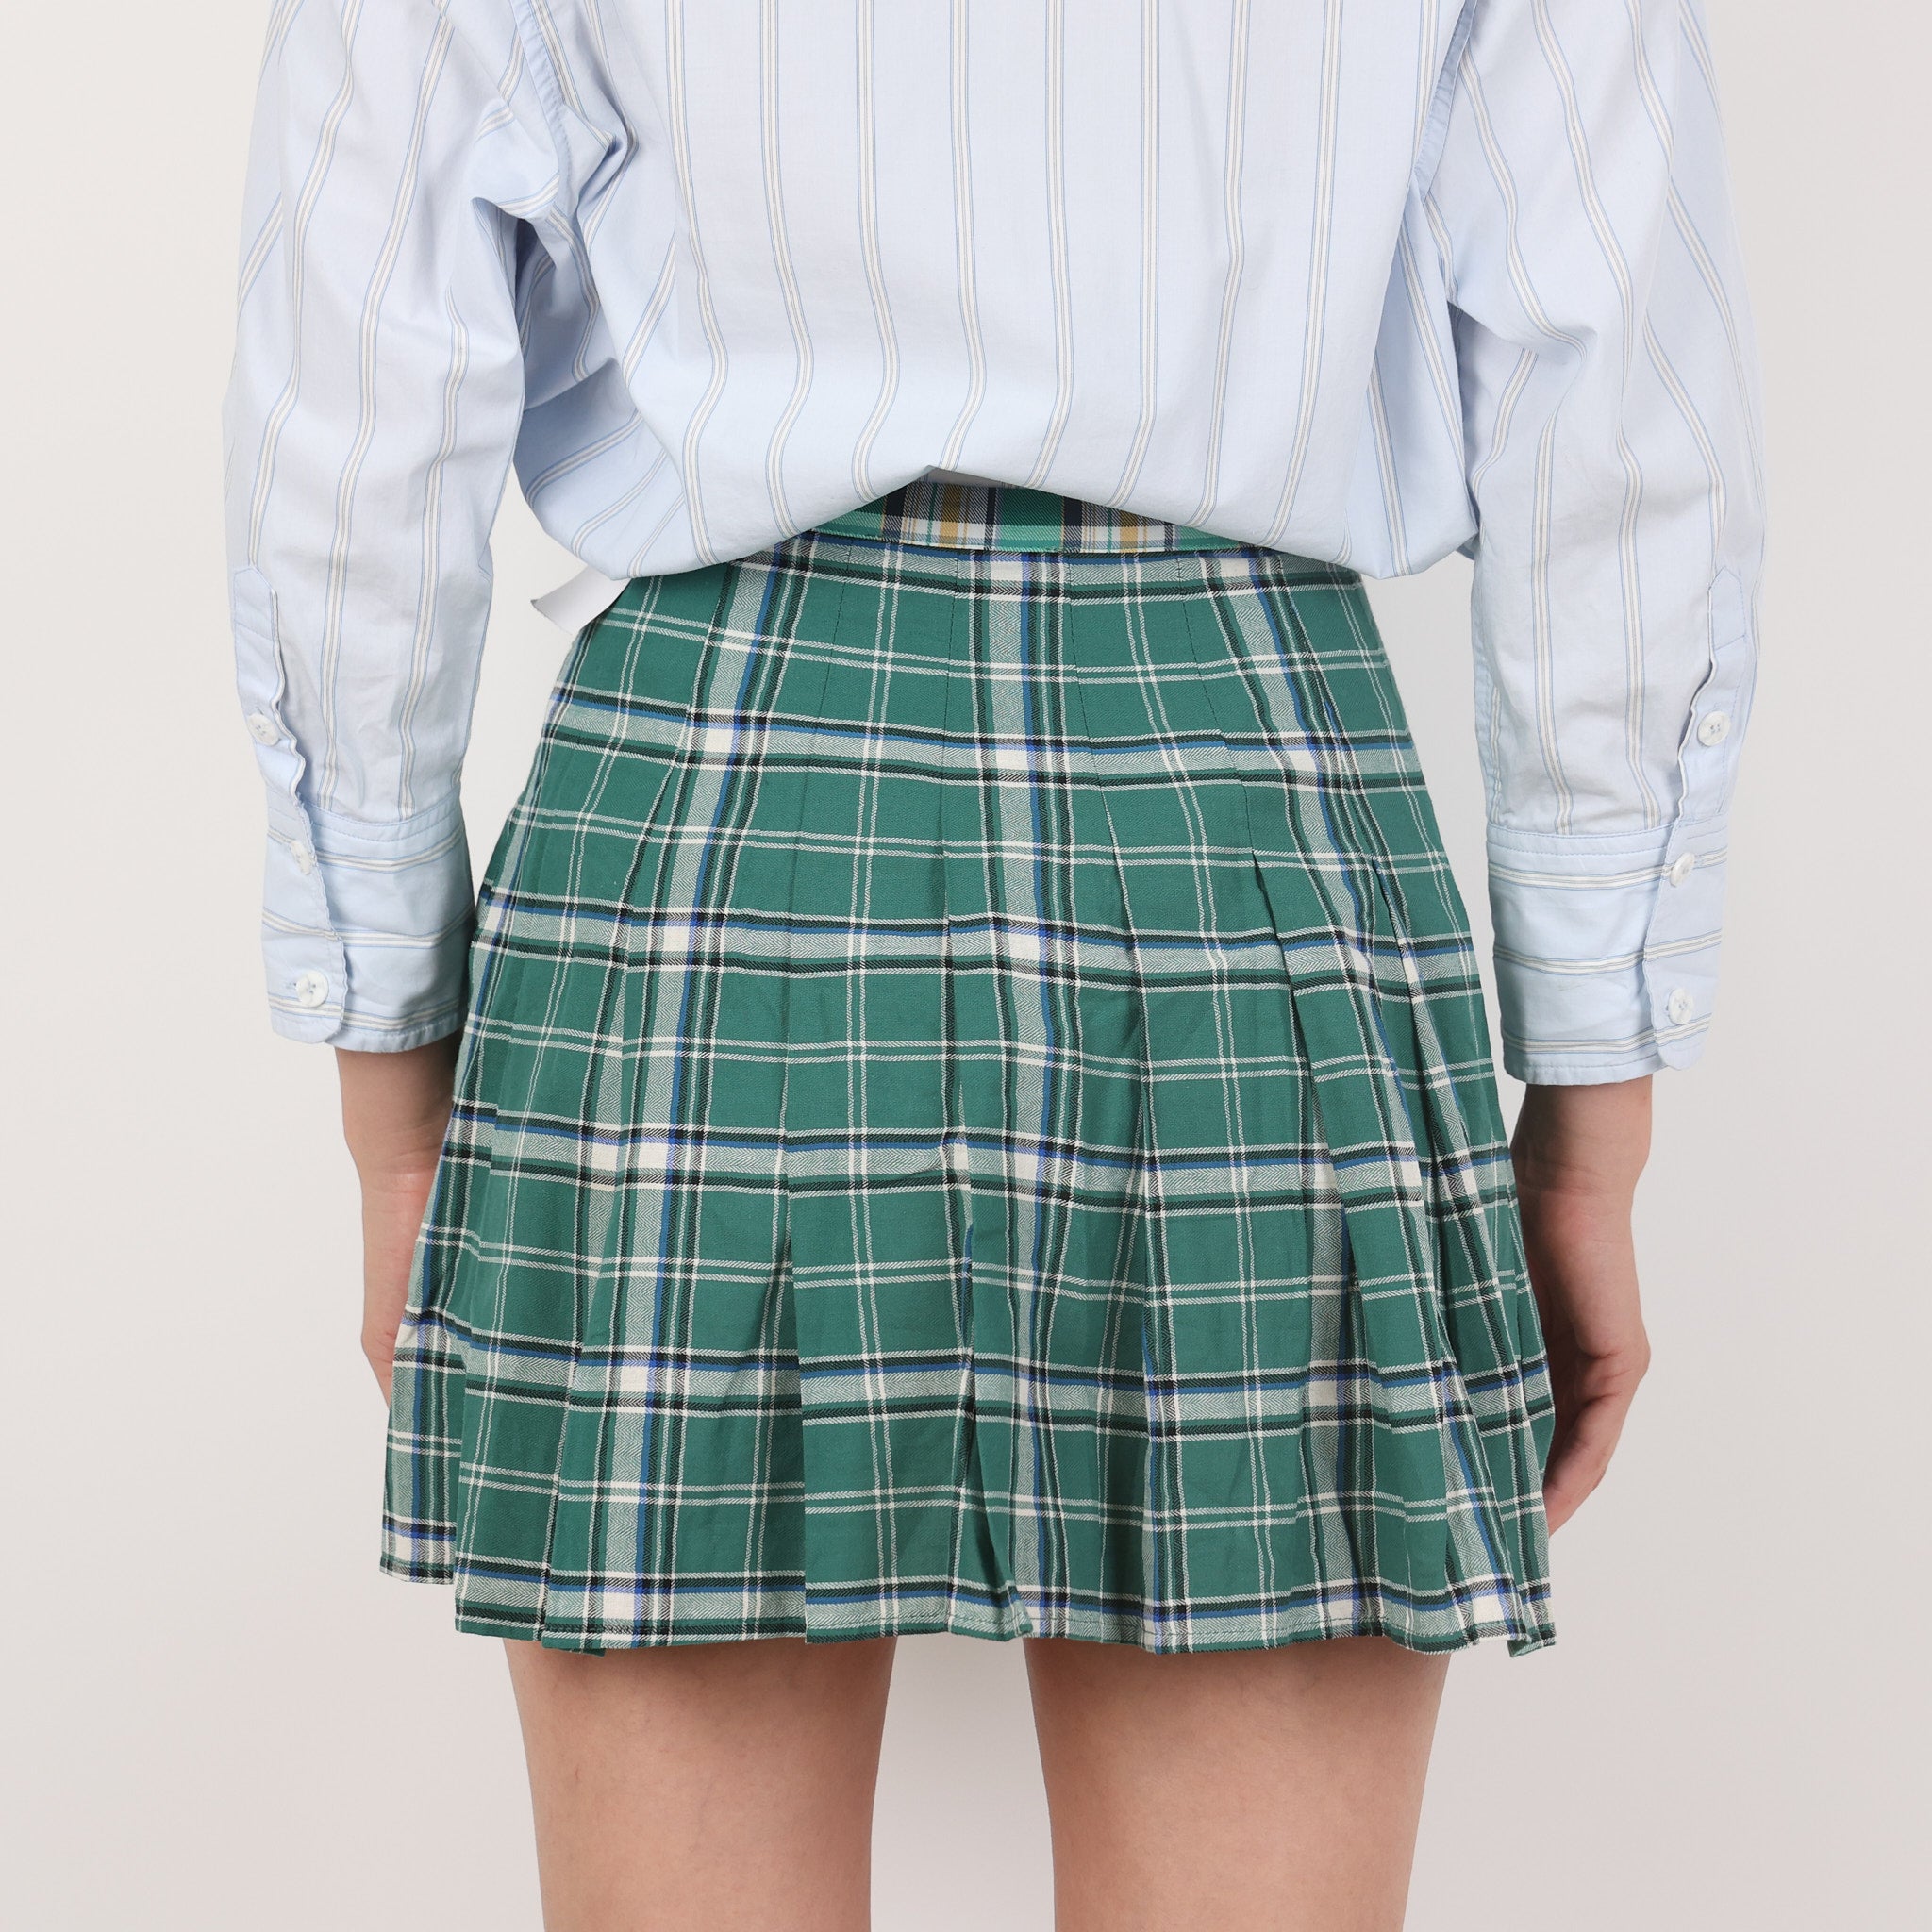 Skirt, UK Size 14